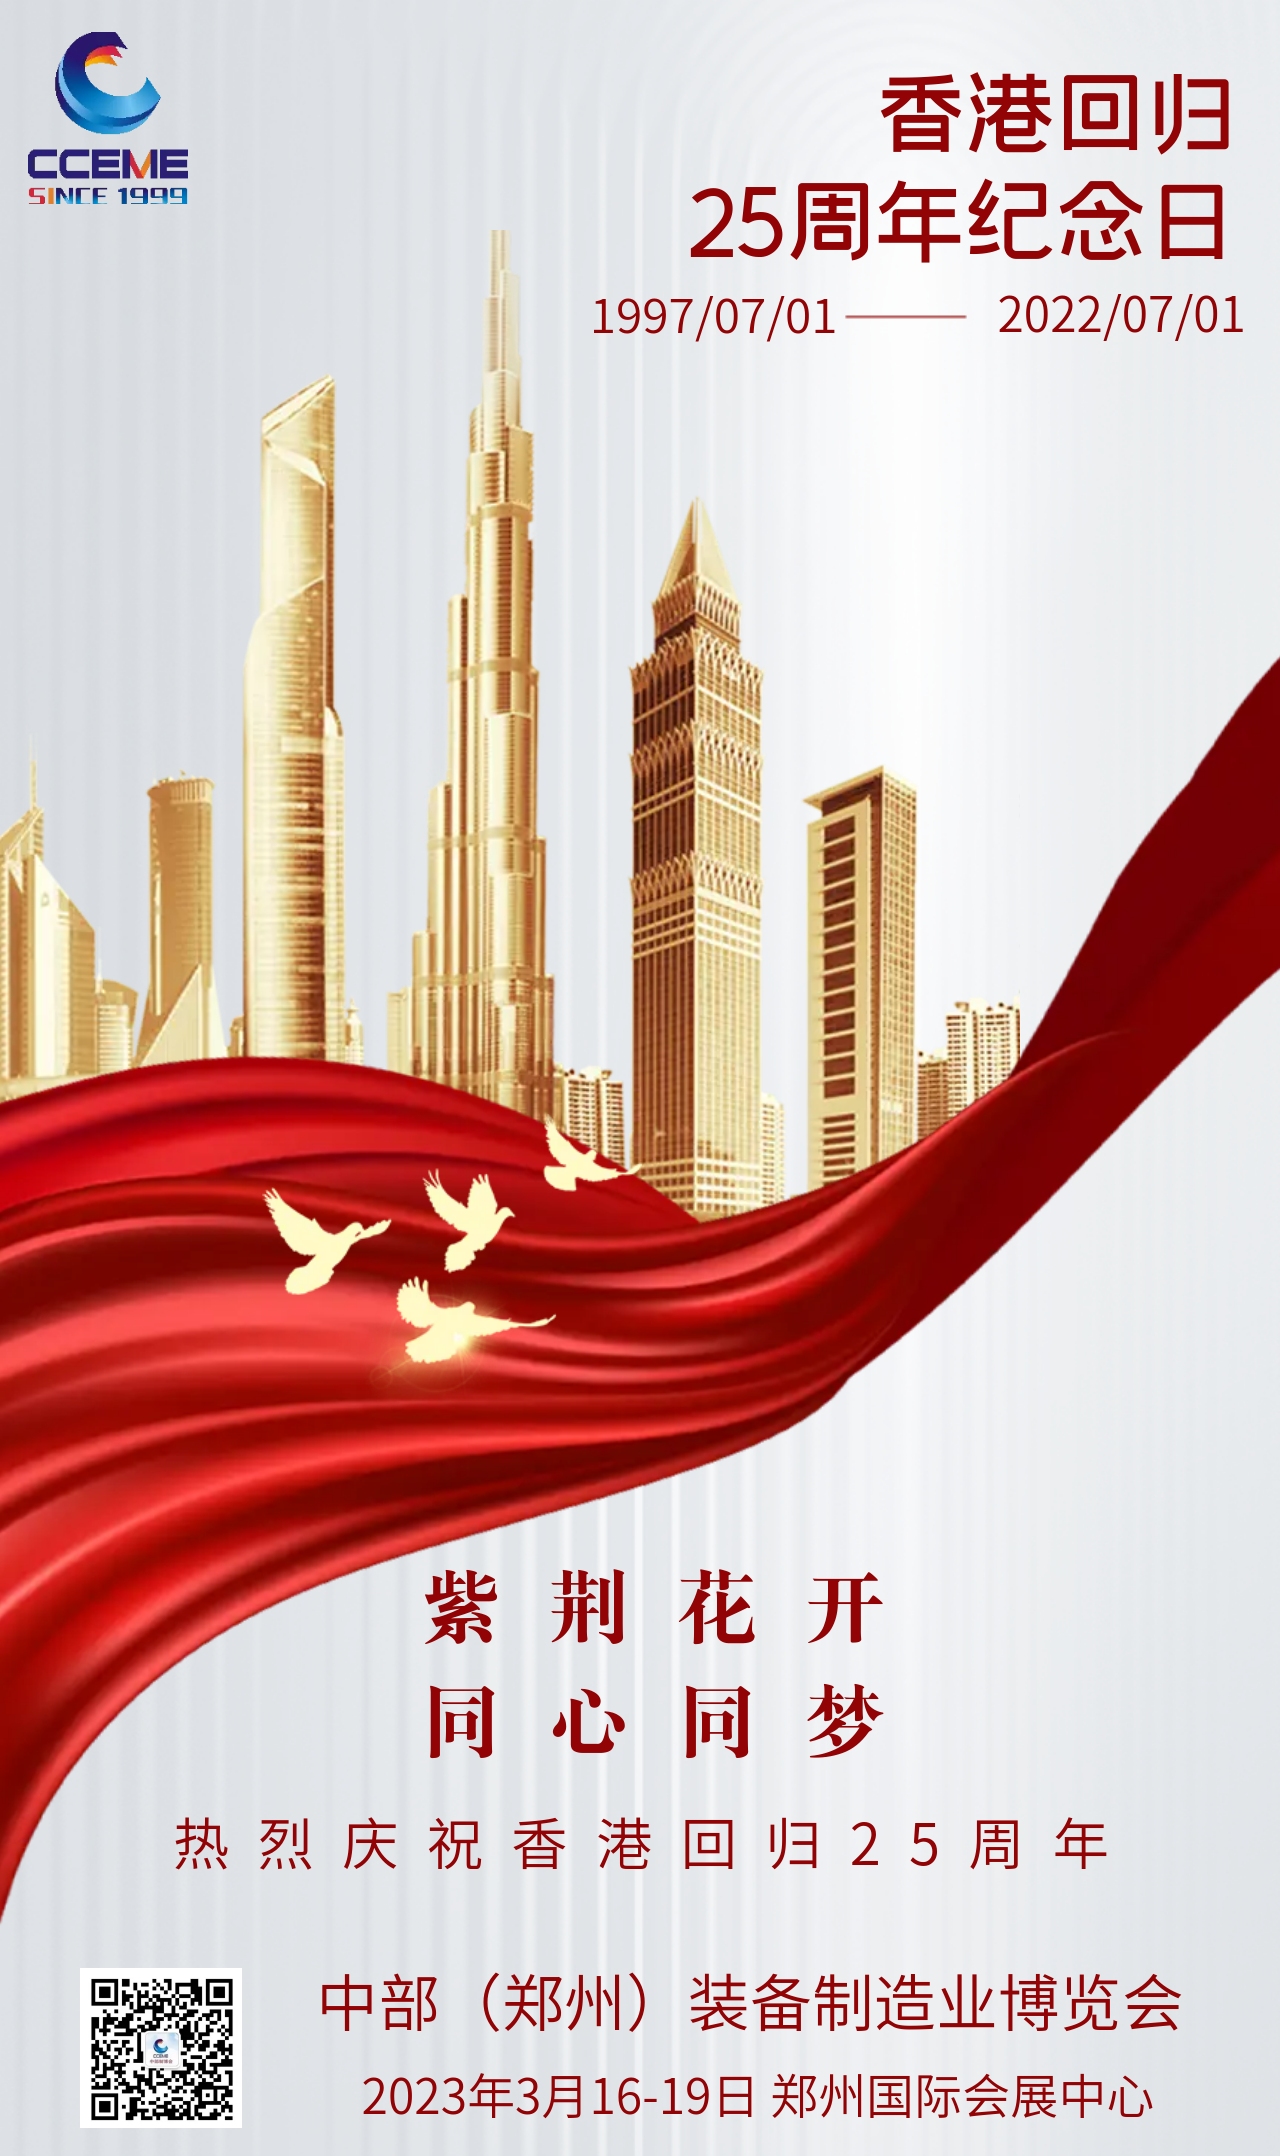 鎏金大气庆祝香港回归25周年宣传海报 (1).jpeg